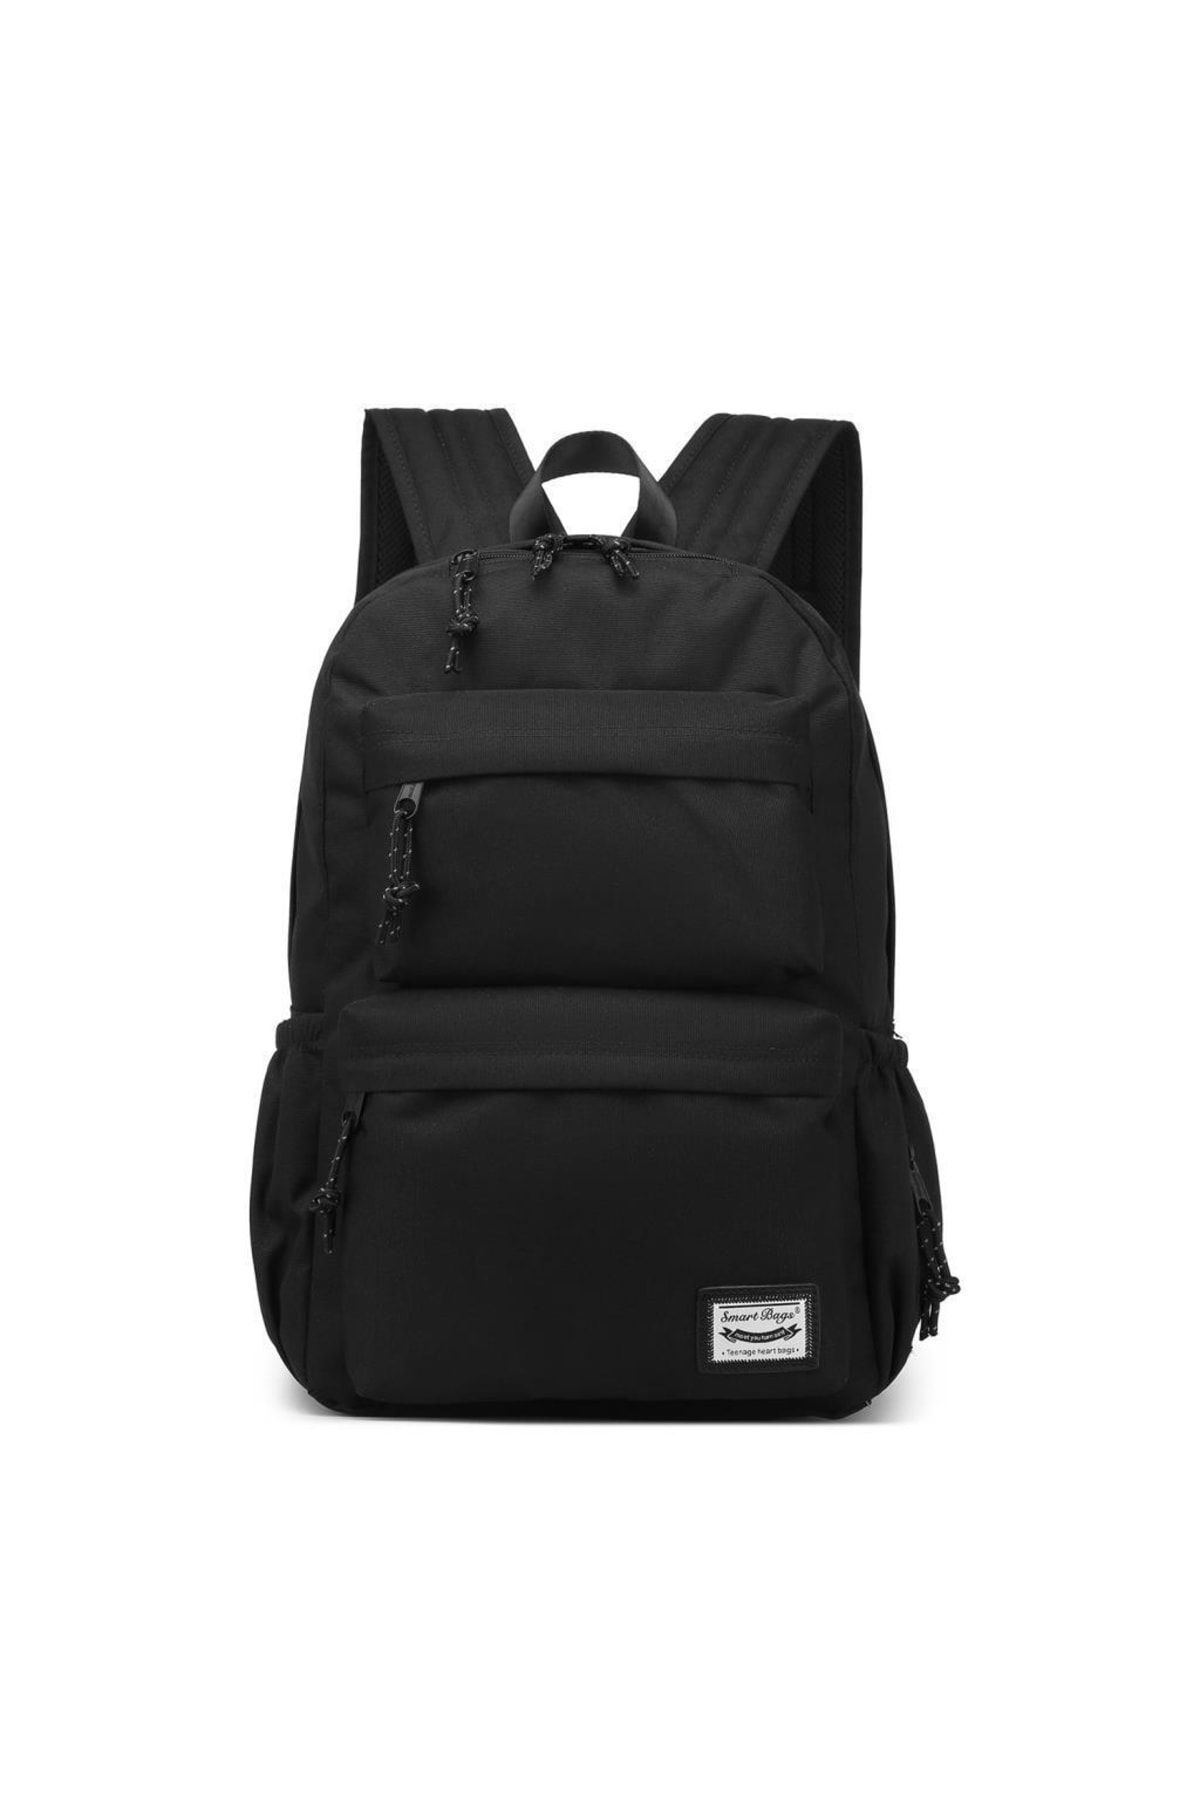 Smart Bags Algstore (Smart Bags) Sırt Çantası Okul Boyu Laptop Gözlü 3154